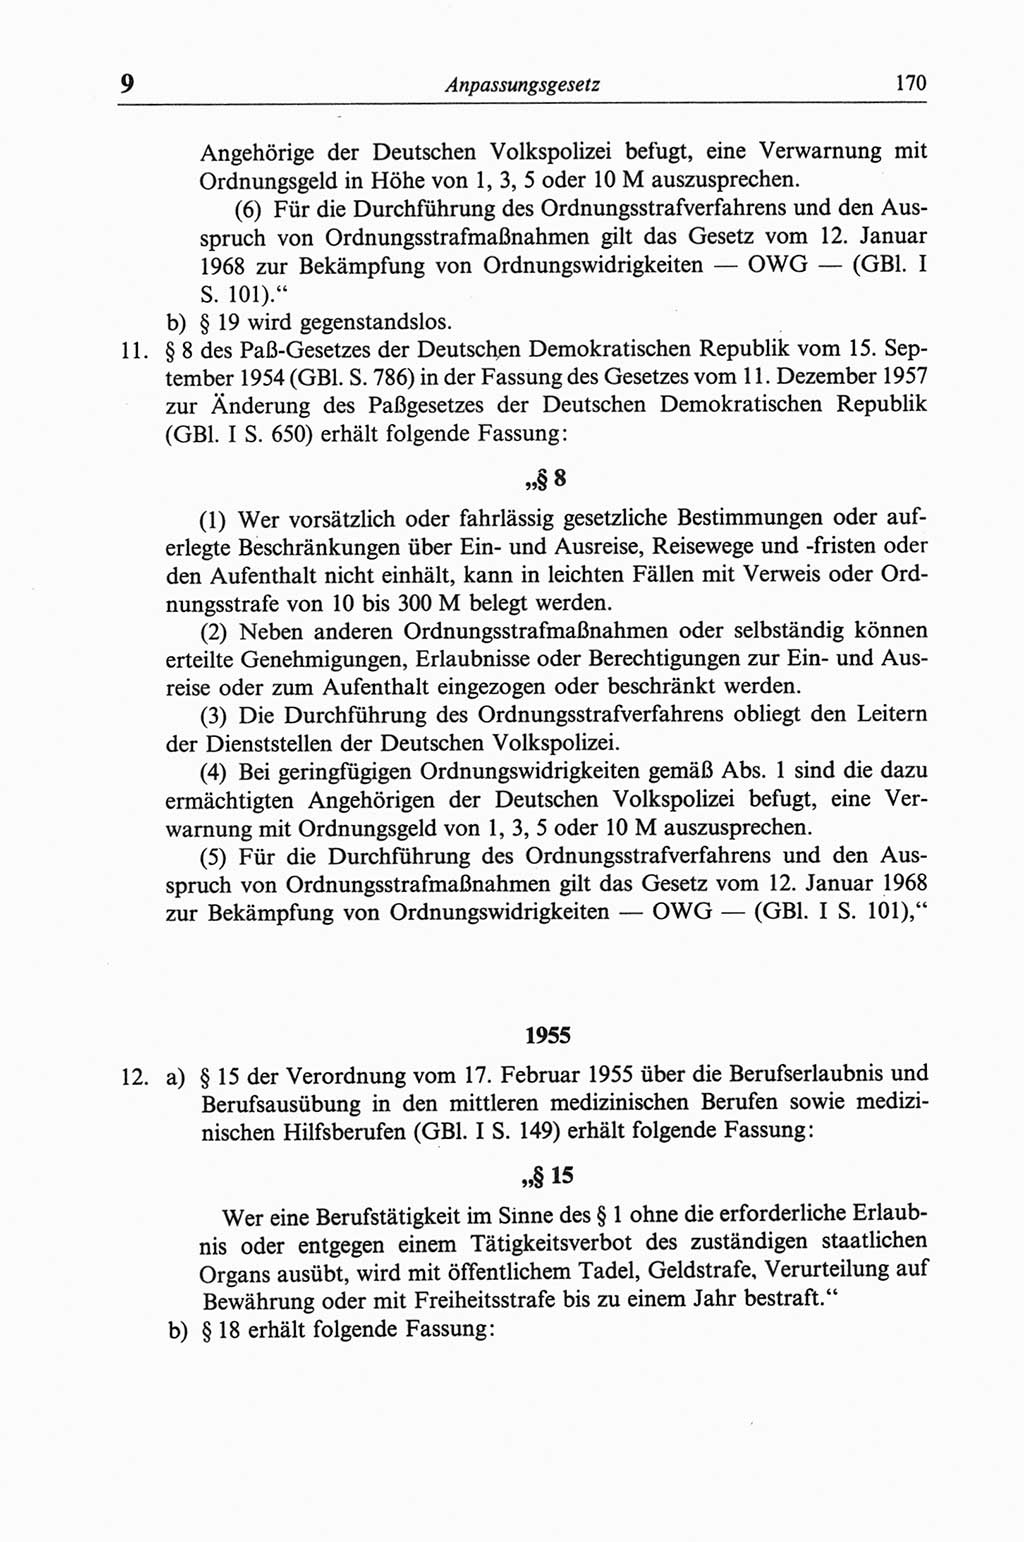 Strafgesetzbuch (StGB) der Deutschen Demokratischen Republik (DDR) und angrenzende Gesetze und Bestimmungen 1968, Seite 170 (StGB Ges. Best. DDR 1968, S. 170)